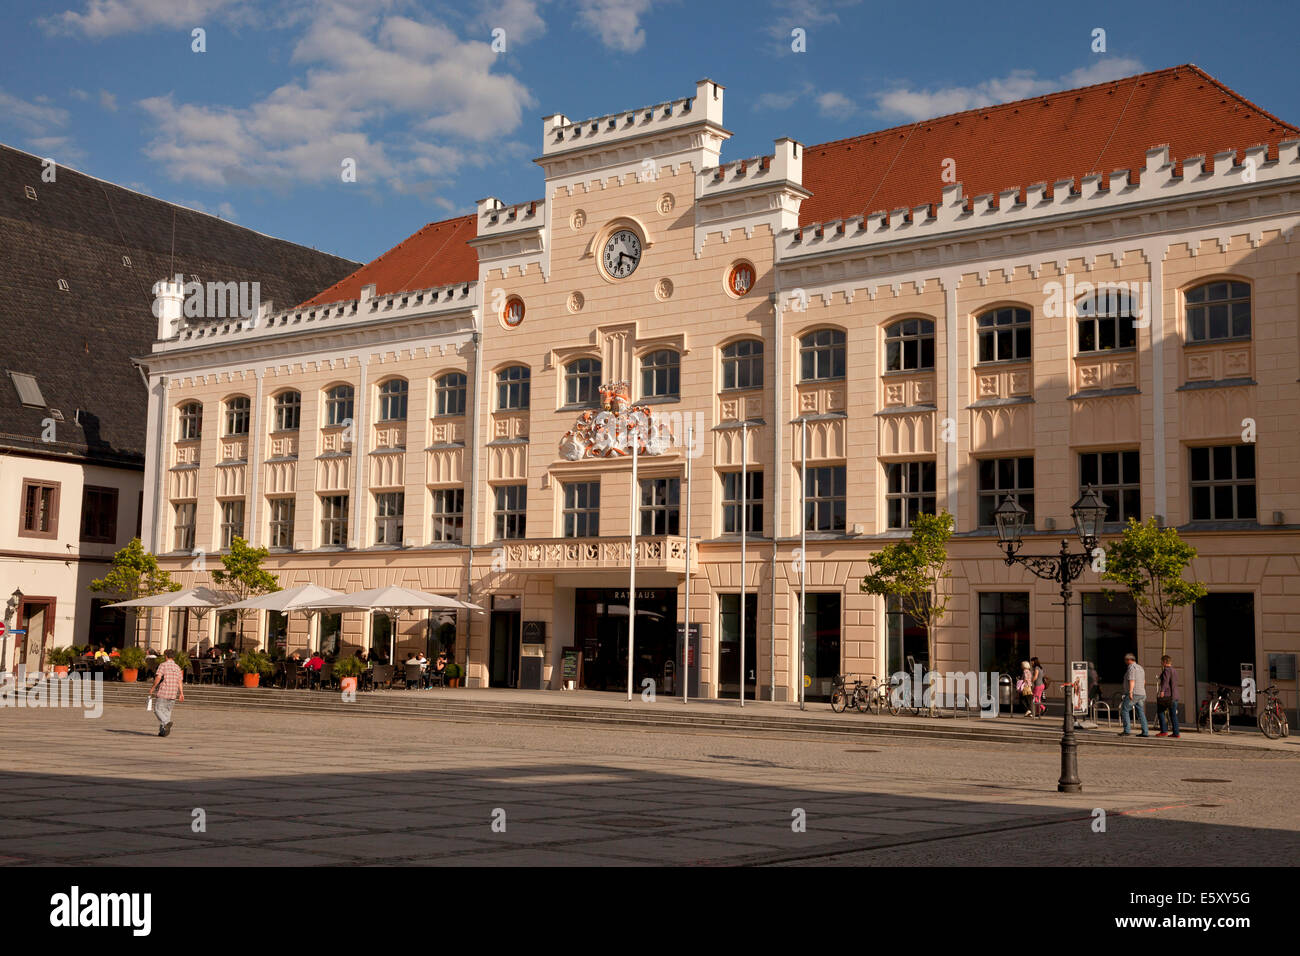 Zwickau town hall on the  main market in  Zwickau, Saxony, Germany, Europe Stock Photo